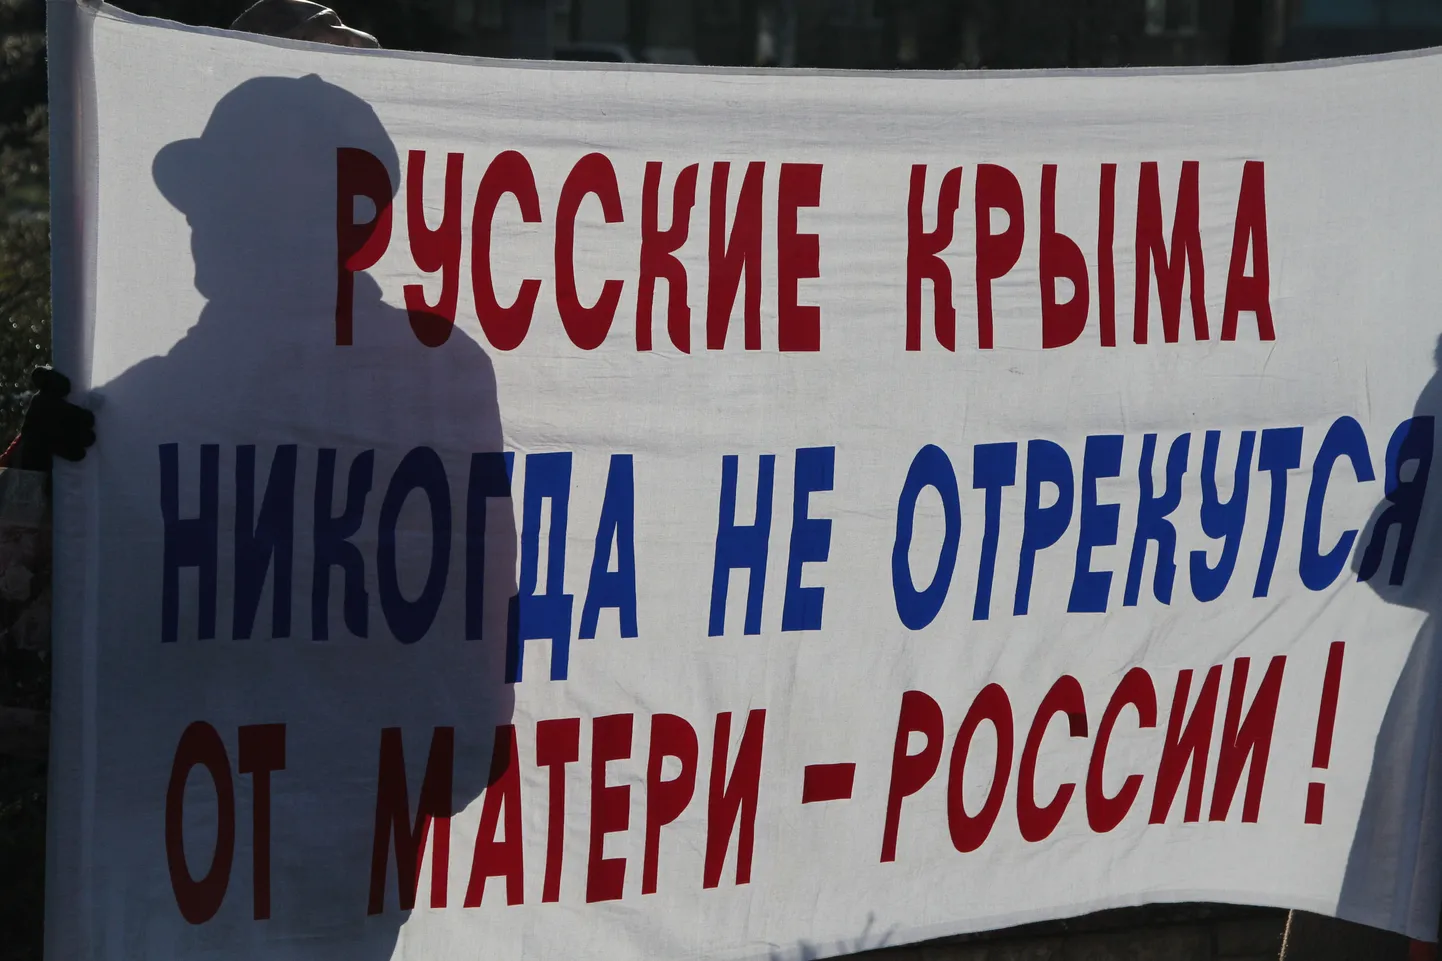 Лозунг сторонников отделения Крыма от Украины.